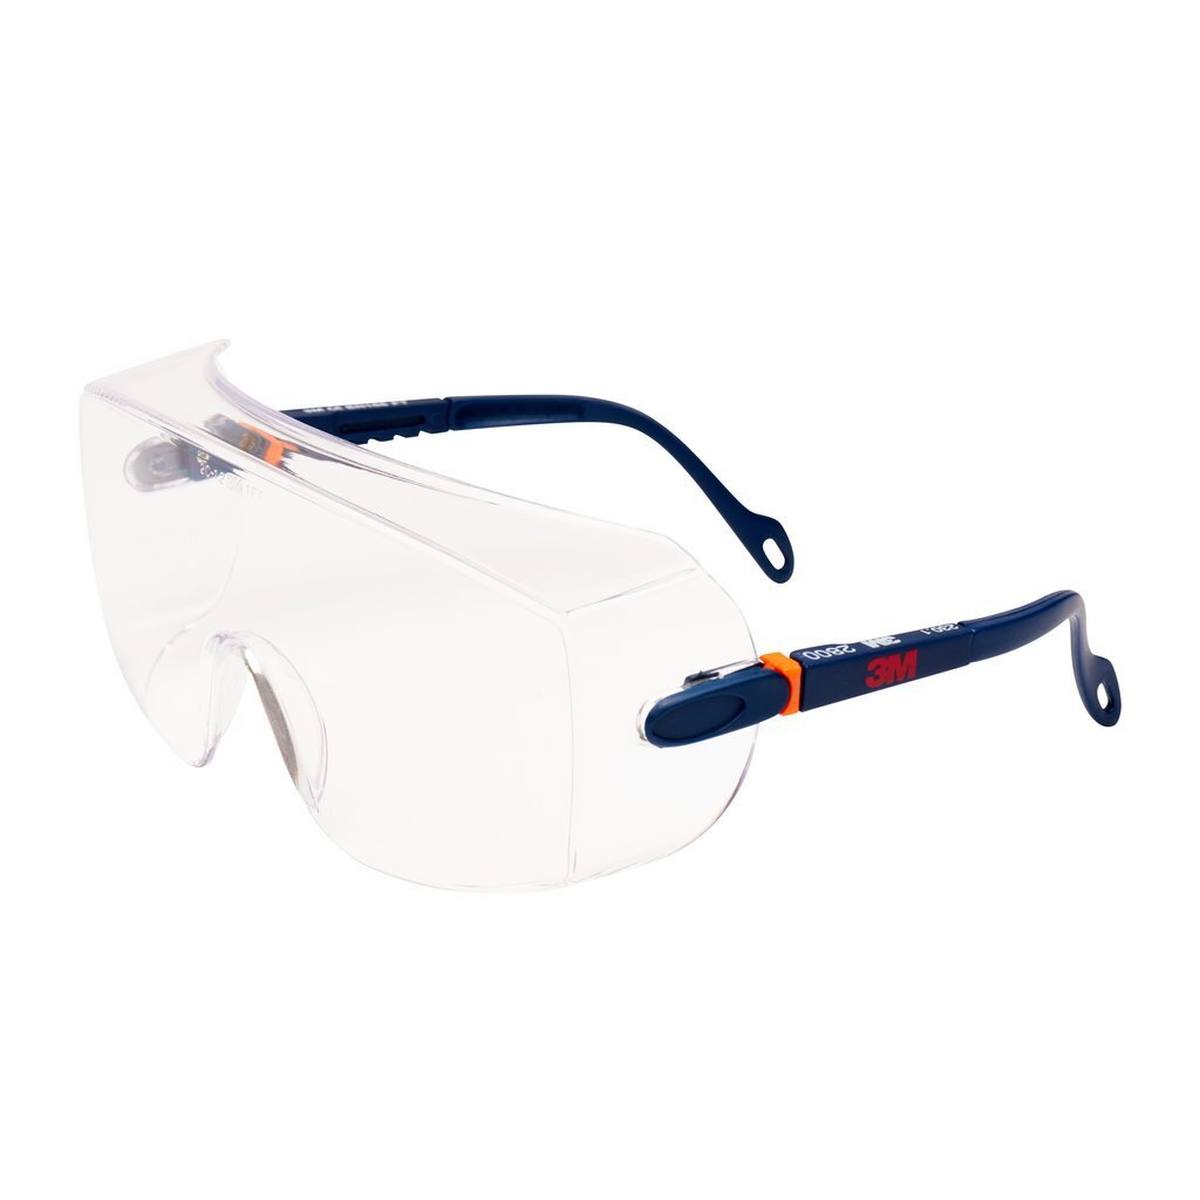 3M 2800 Gafas de protección AS/UV, PC, transparentes, ajustables, ideales como sobregafas para usuarios de gafas